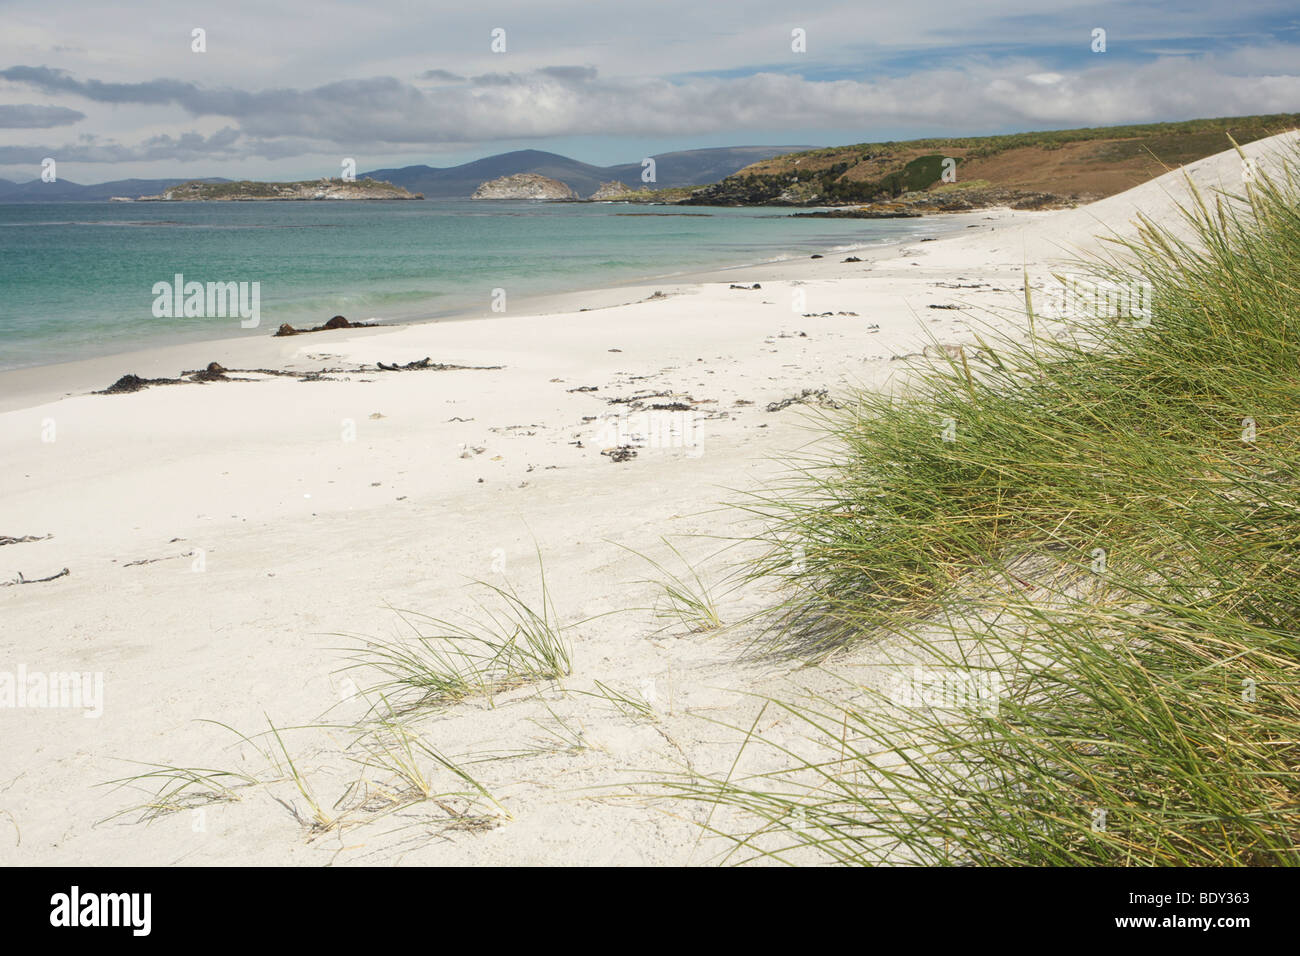 Beach on Carcass Island, Falkland Islands Stock Photo